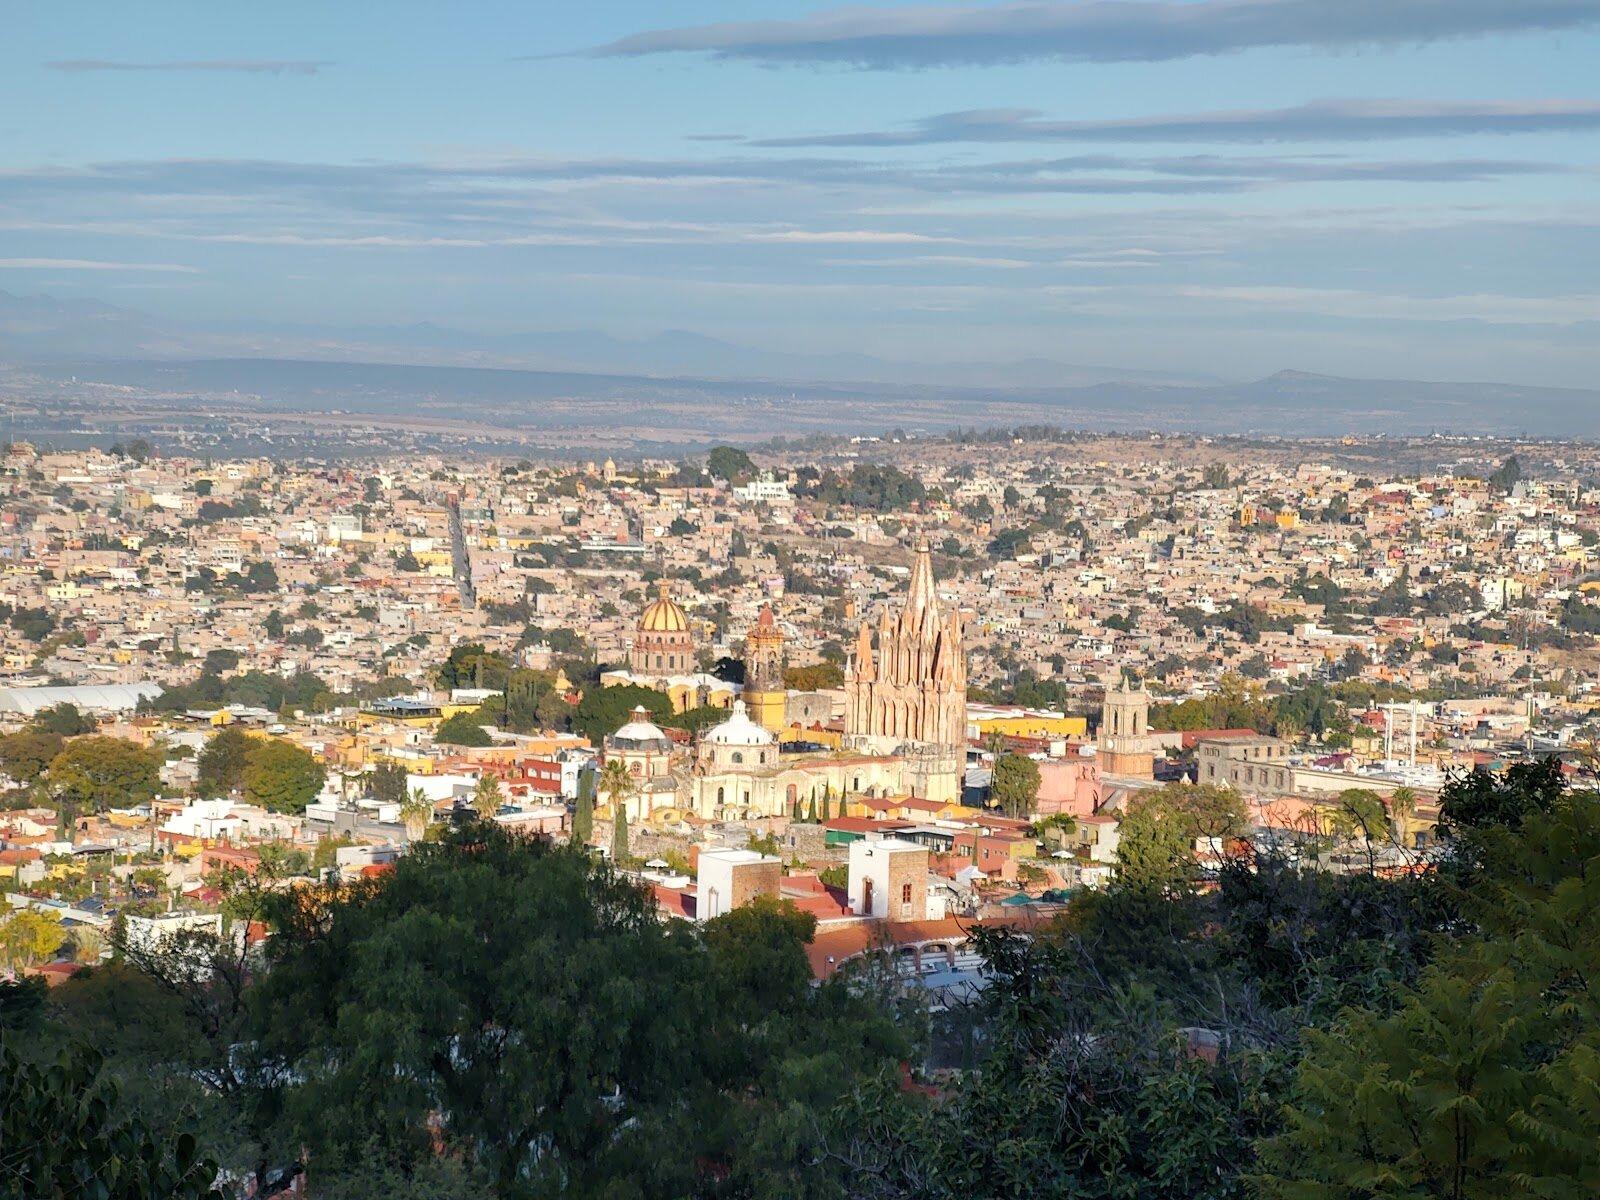 Khung cảnh thành phố nhìn từ El Mirador (Ảnh: Internet)